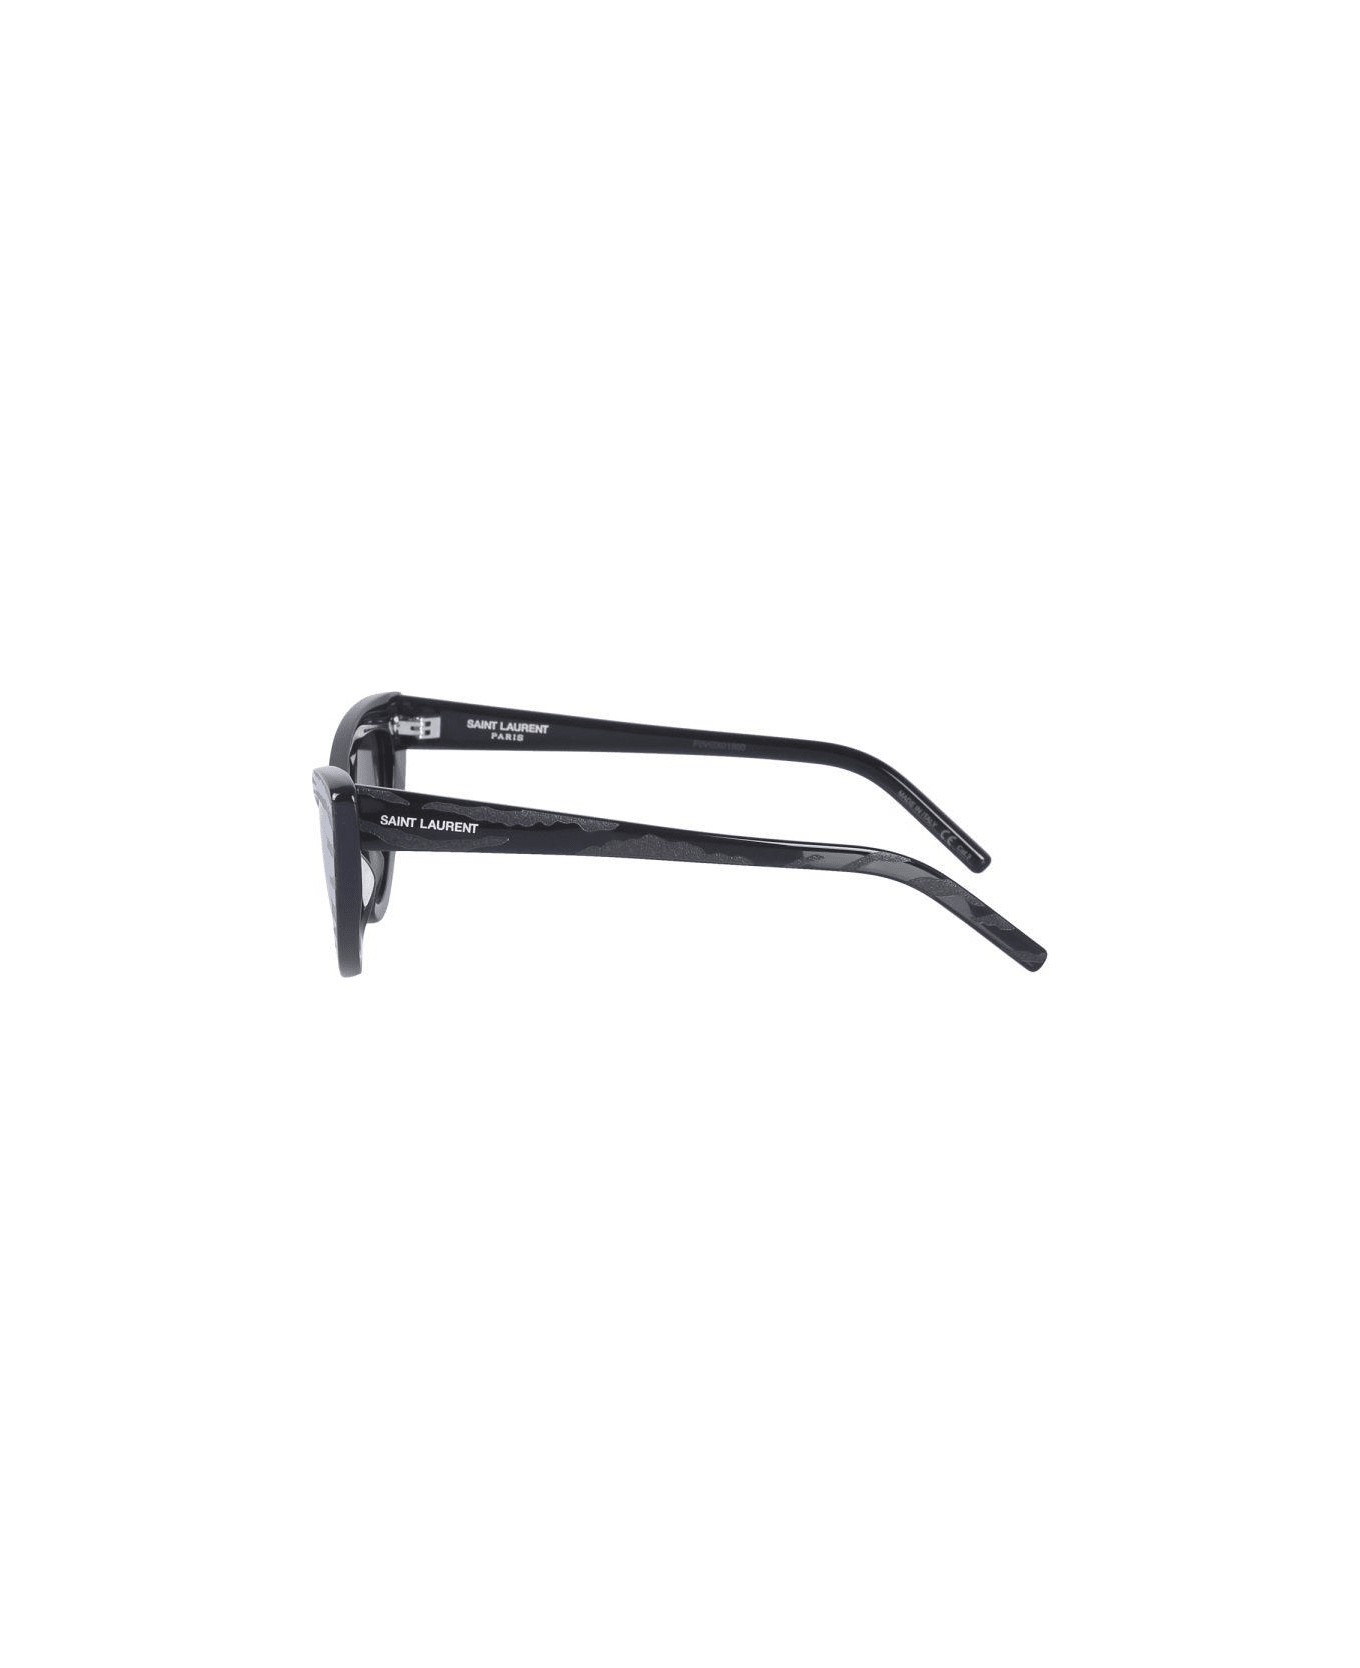 Saint Laurent Cat-eye Frame Sunglasses - BLACK